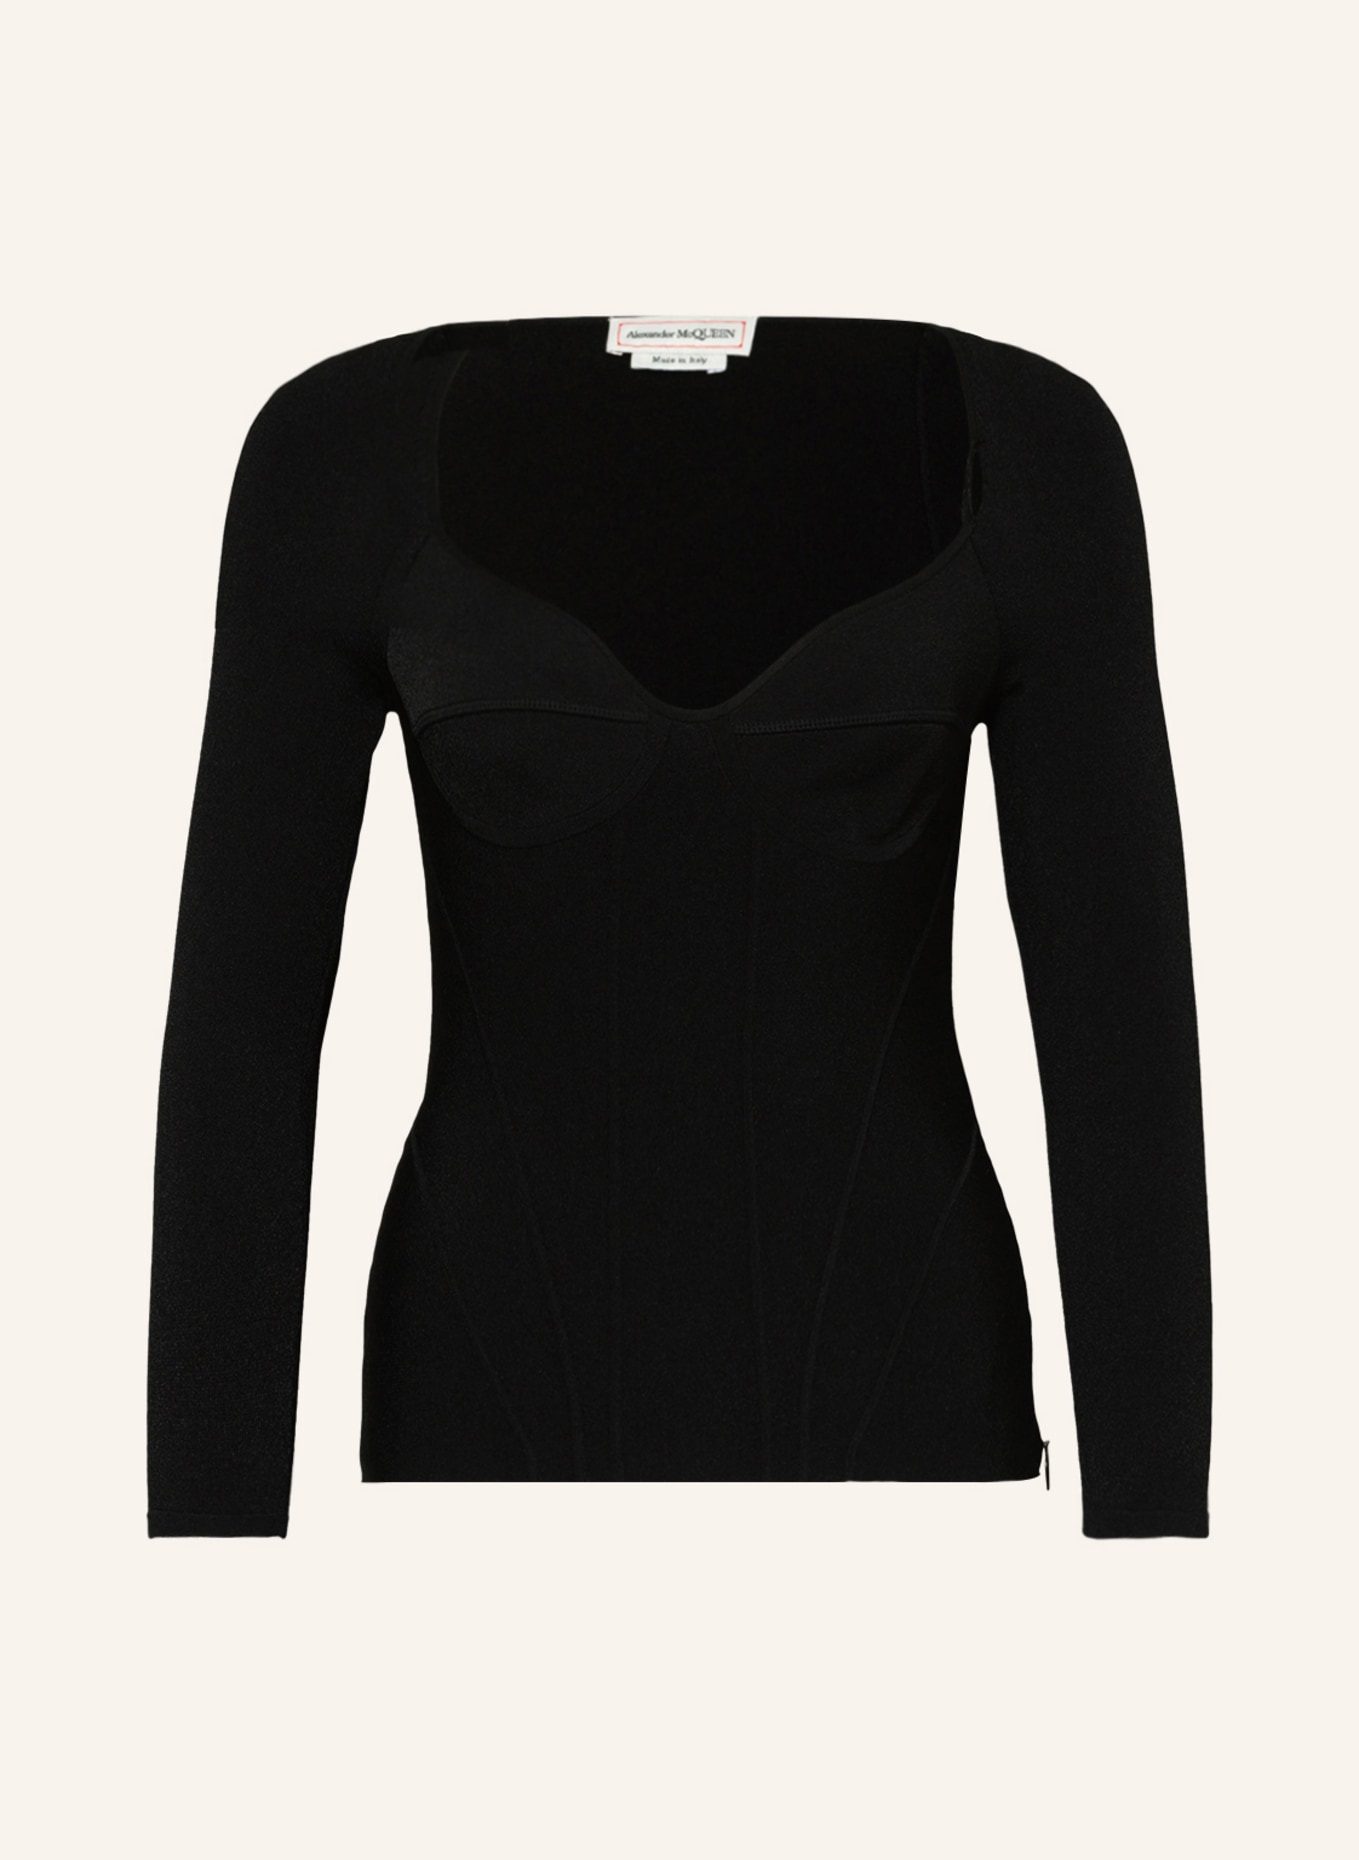 Alexander McQUEEN Sweater , Color: BLACK (Image 1)